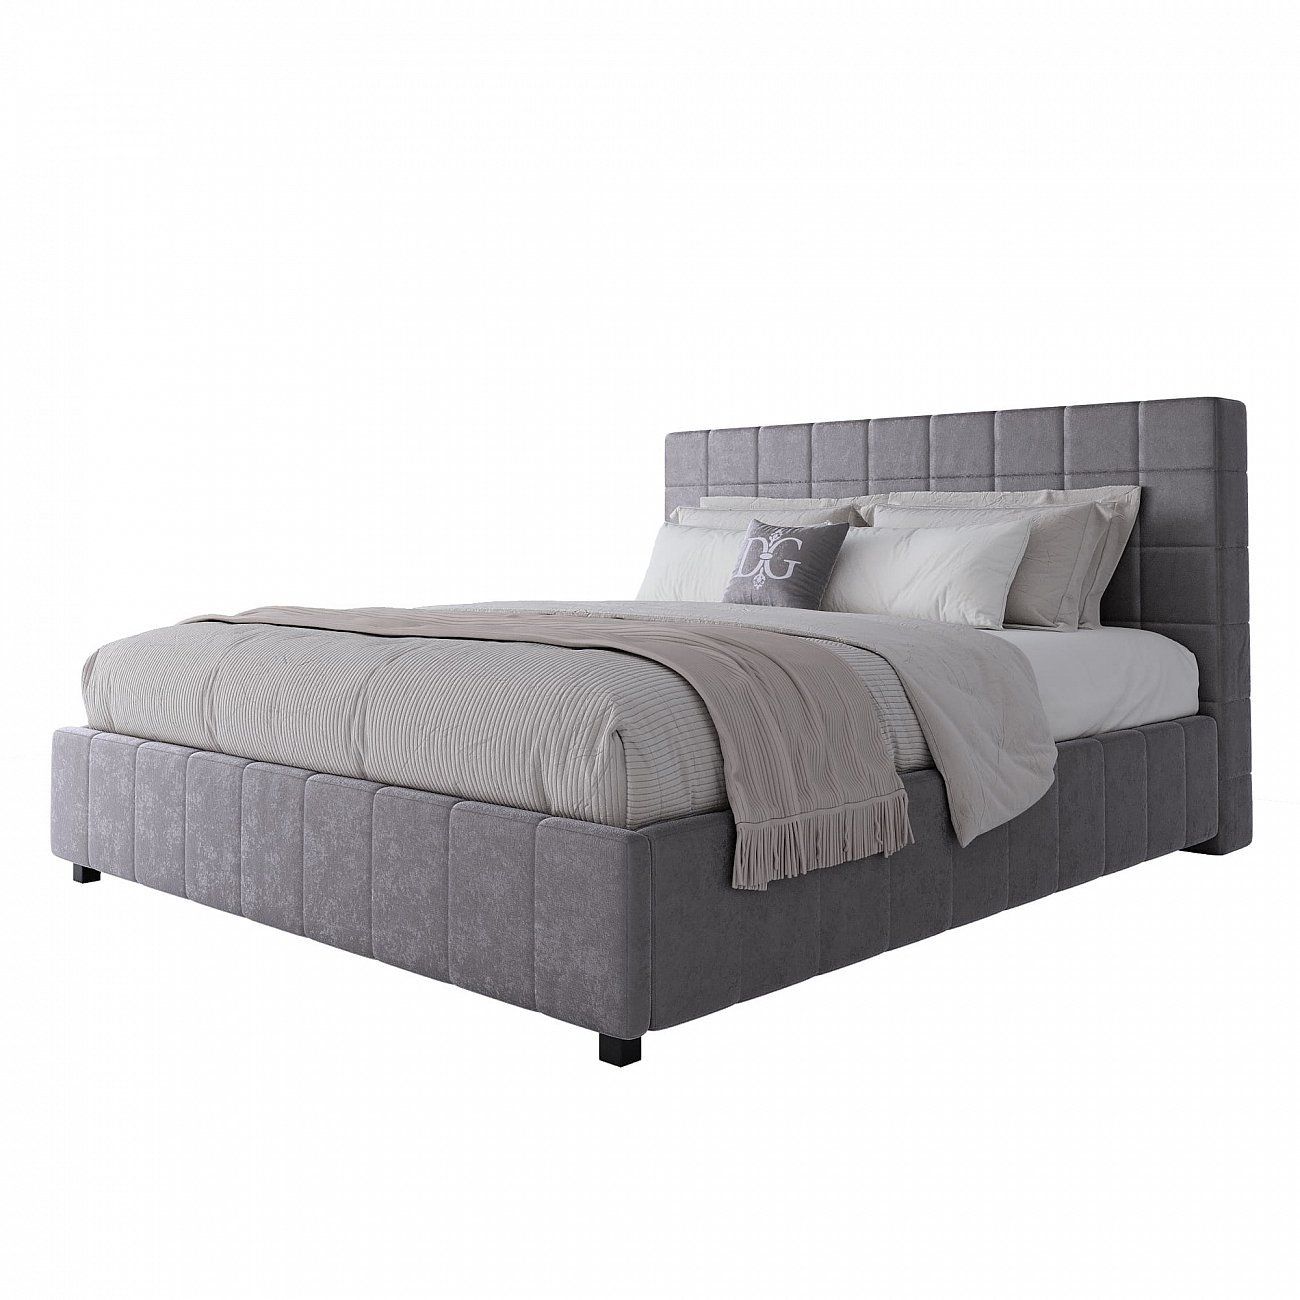 Double bed 180x200 grey-beige Shining Modern